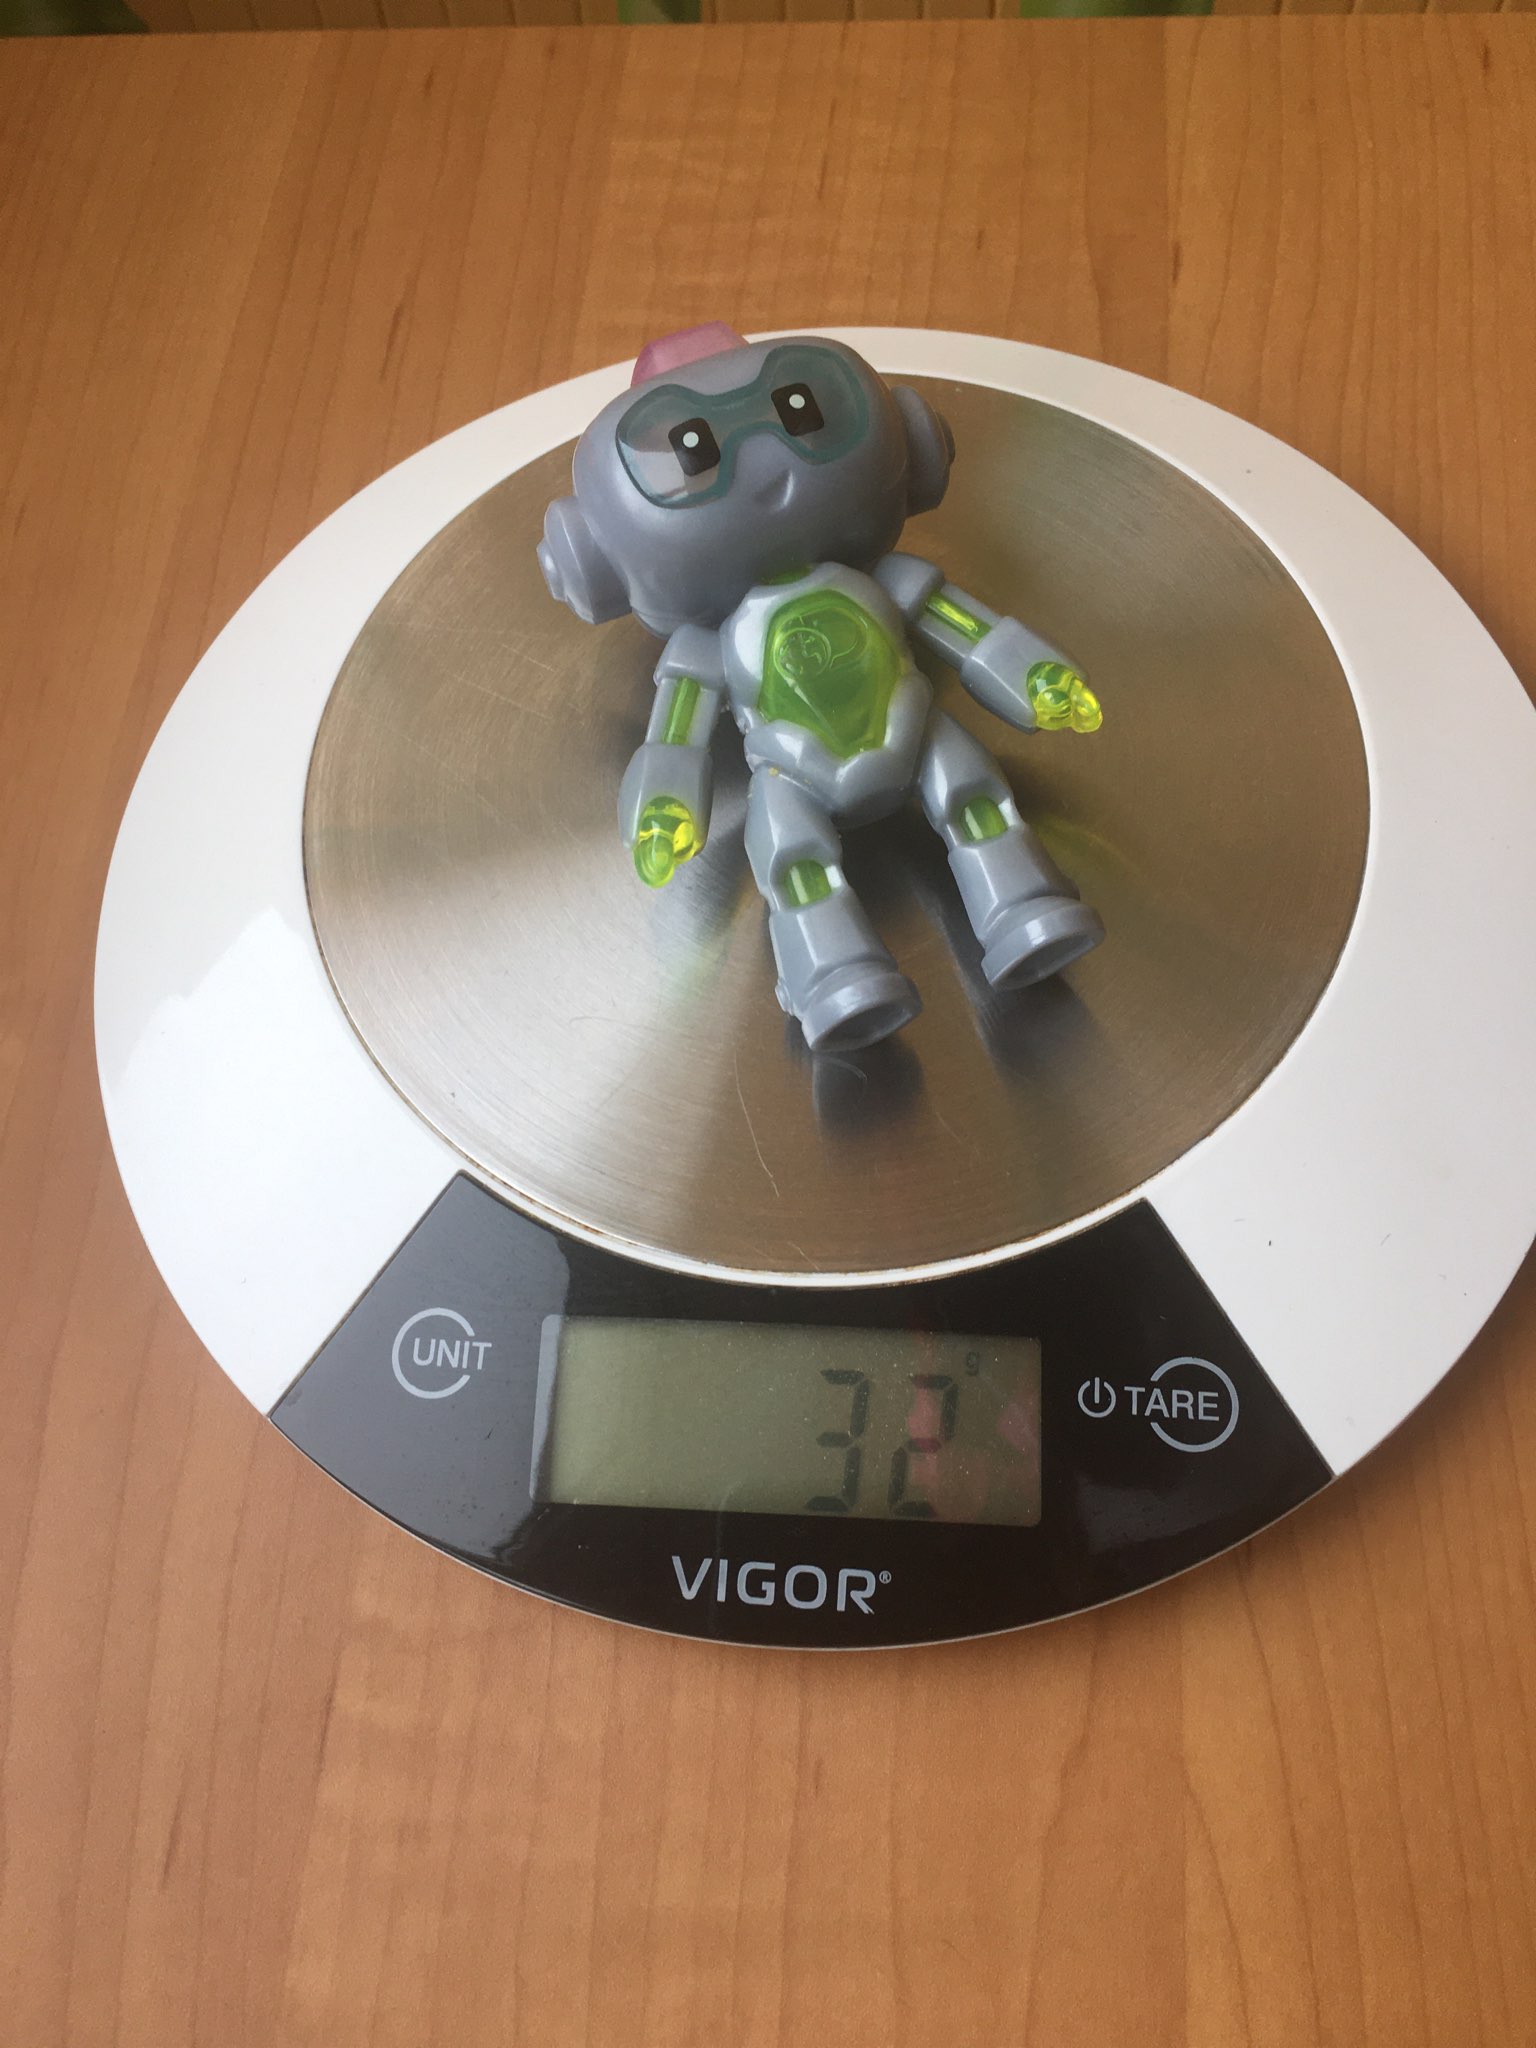 вес робота детского